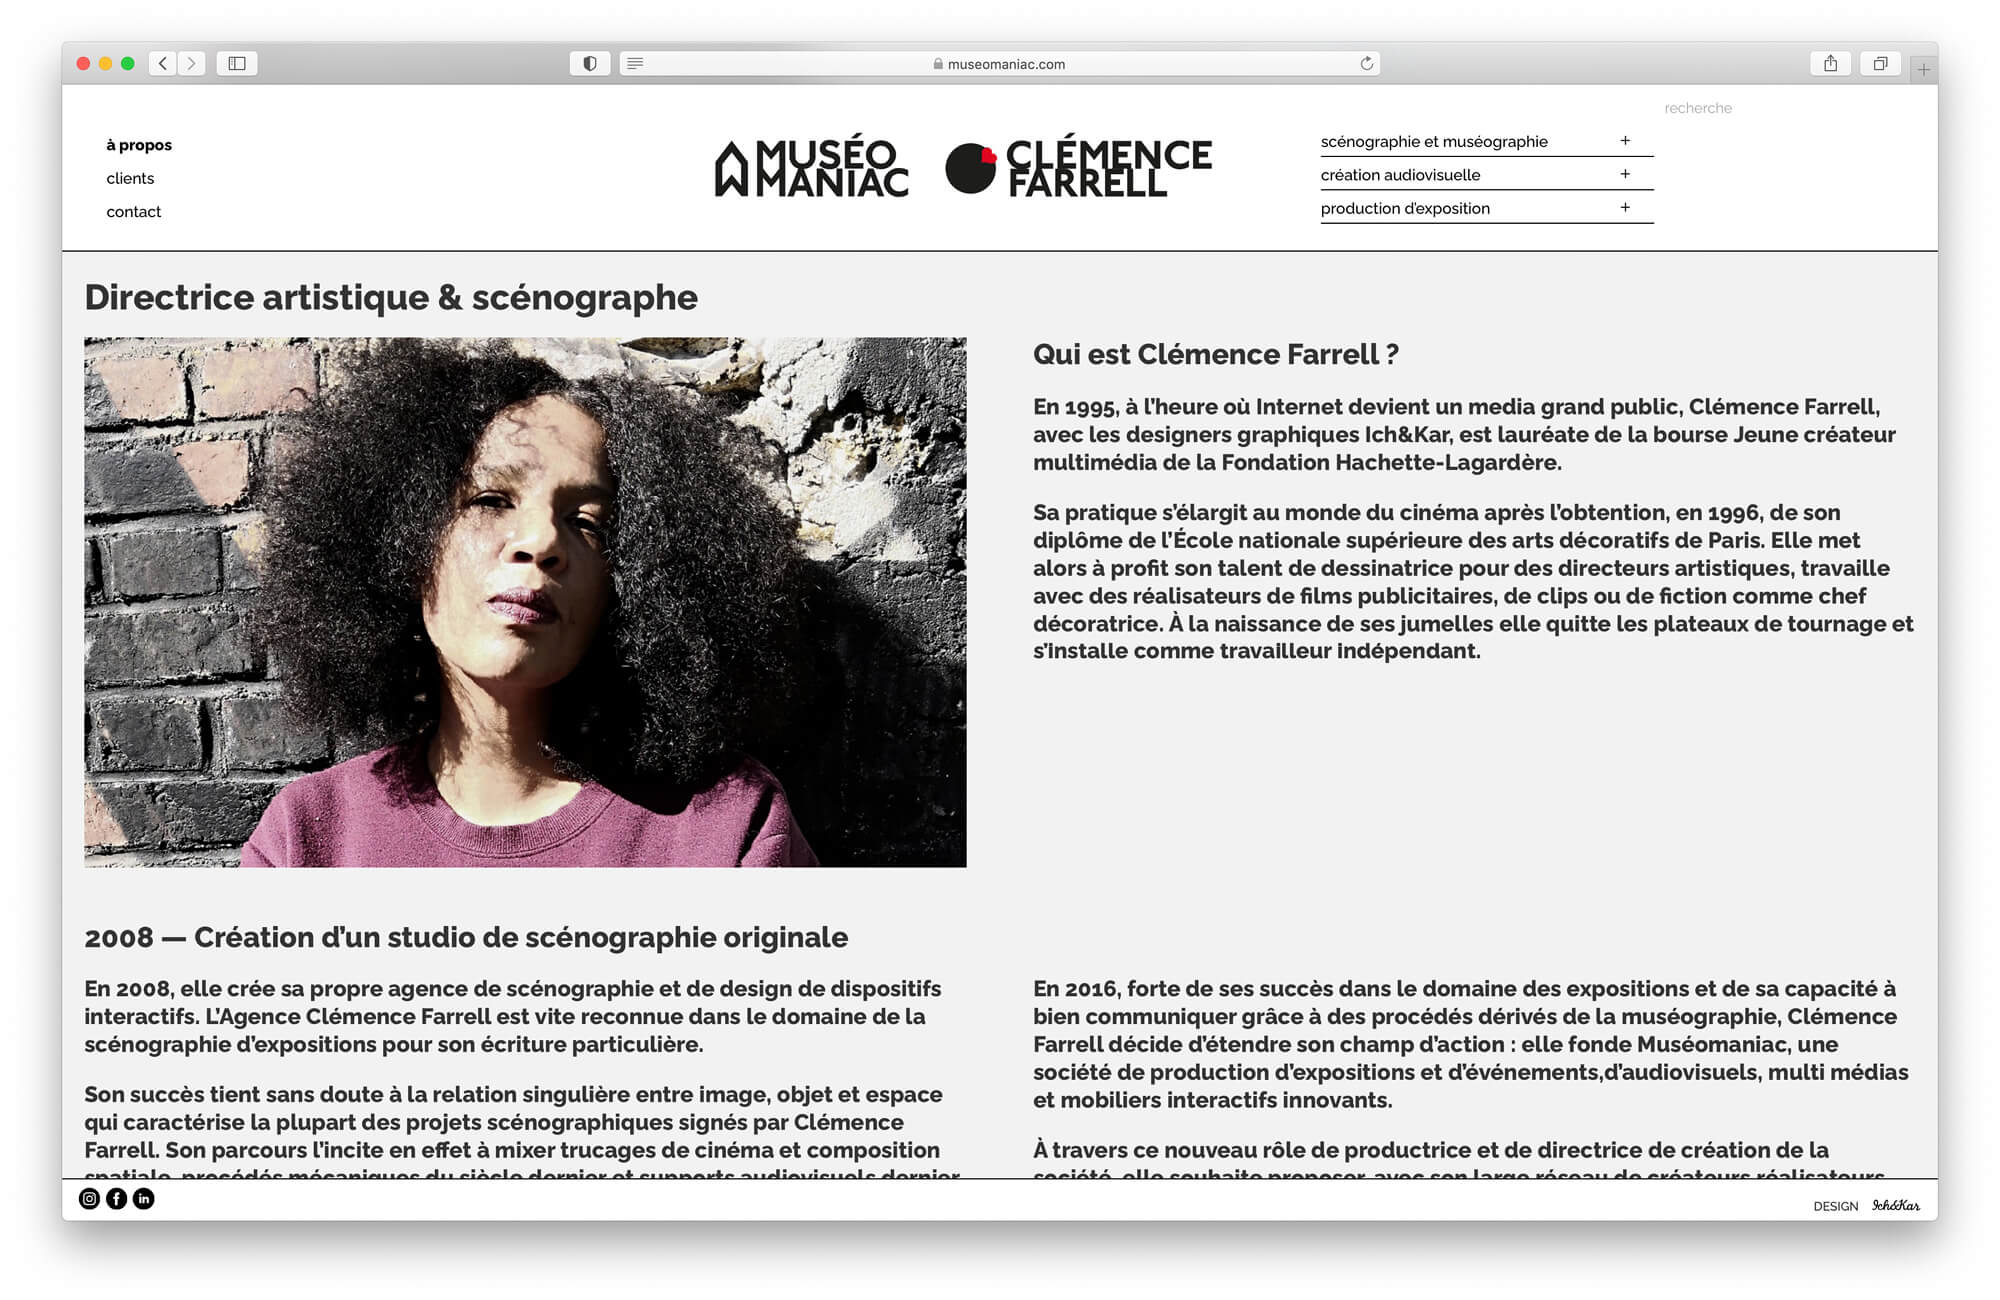 La page à propos presente la biographie de la scenographe Clémence Farrell ainsi que l'agence Muséomaniac, design IchetKar